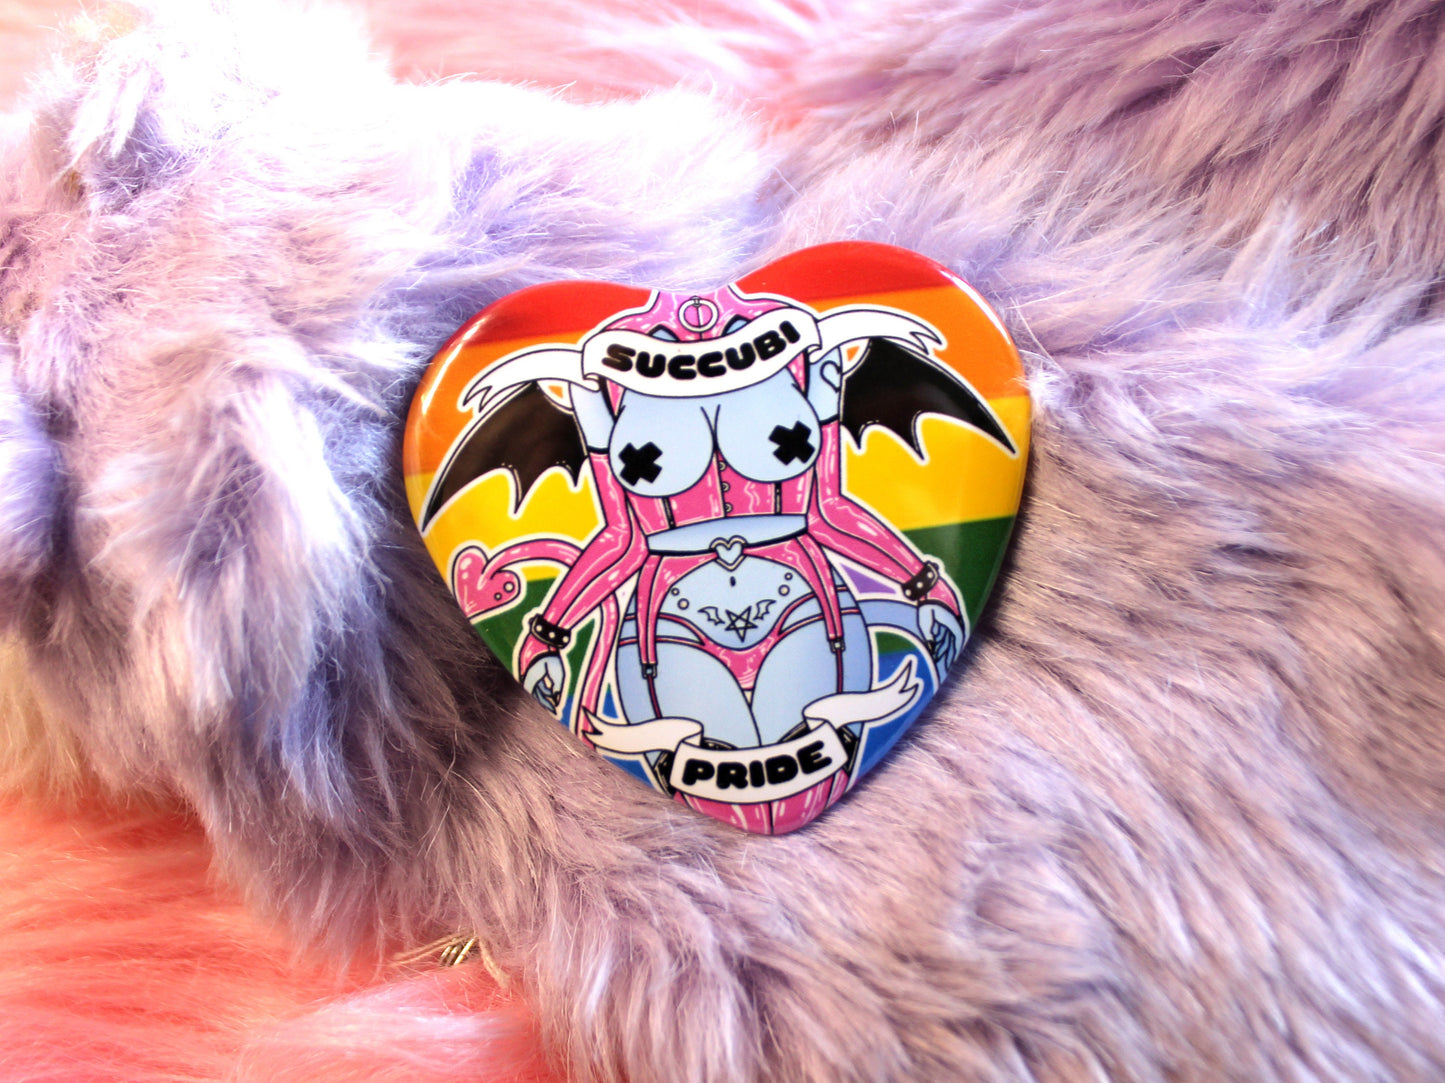 Succubi Pride Heart Badges (55mm) - LGBTQ+ Succubus Pride Flag